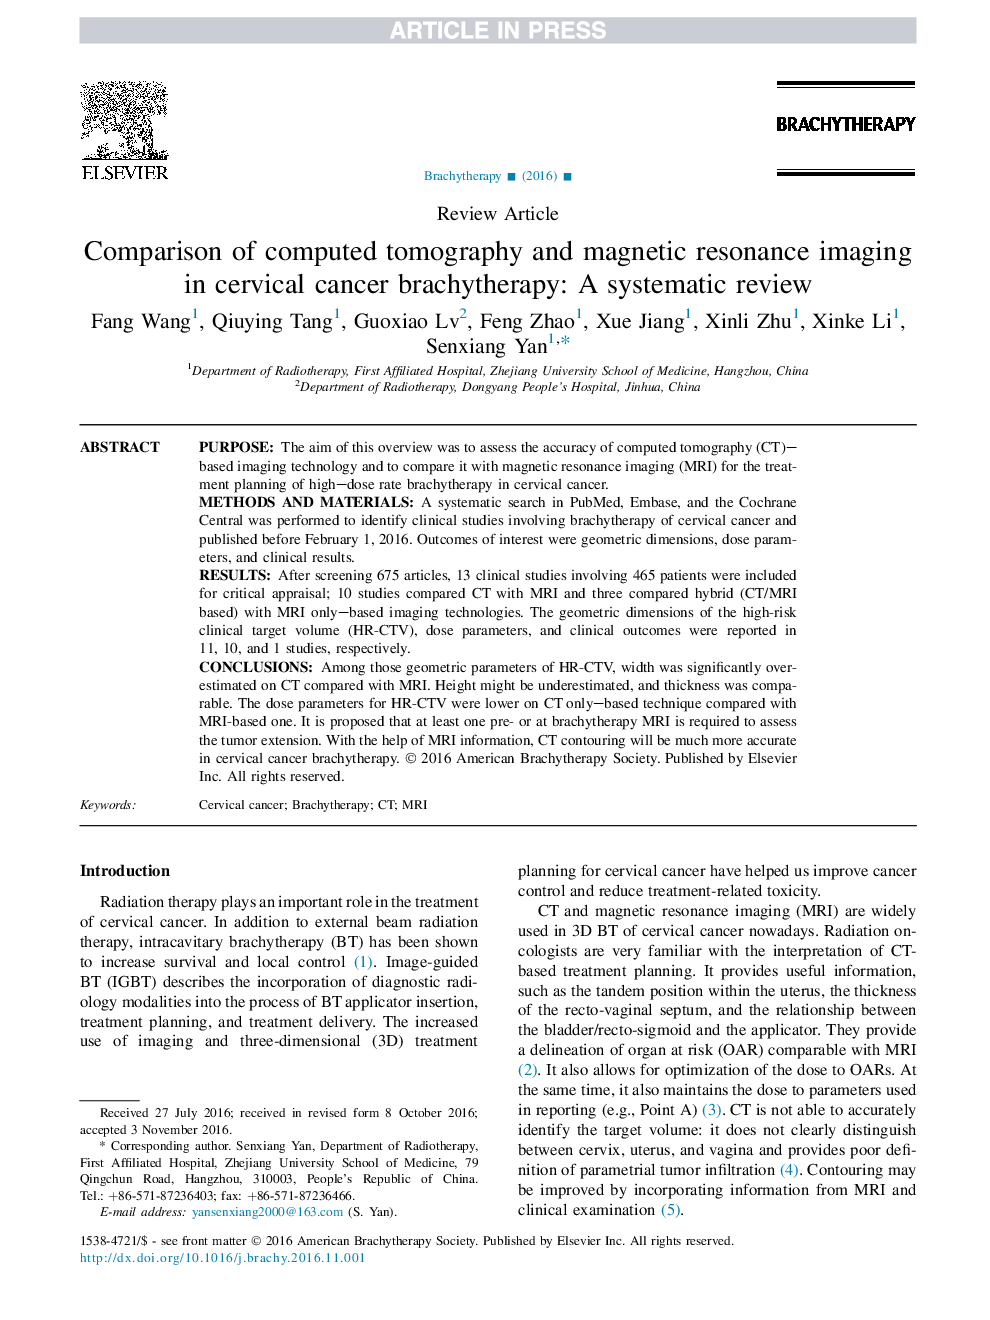 مقایسه توموگرافی کامپیوتری و تصویربرداری رزونانس مغناطیسی در برشیتراپی سرطان سرویکس: بررسی سیستماتیک 